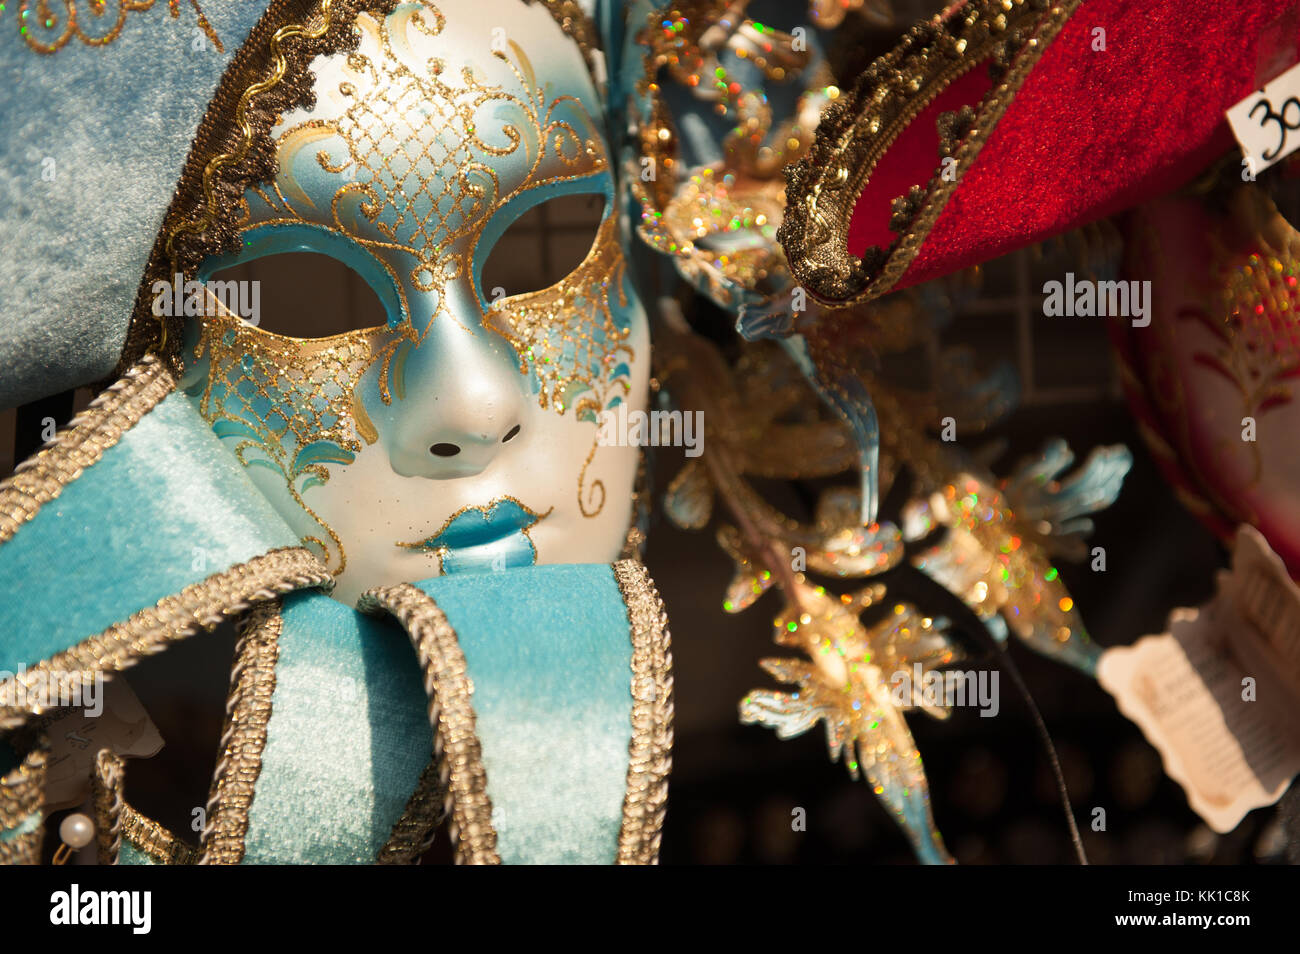 Ventian carnival mask Stock Photo